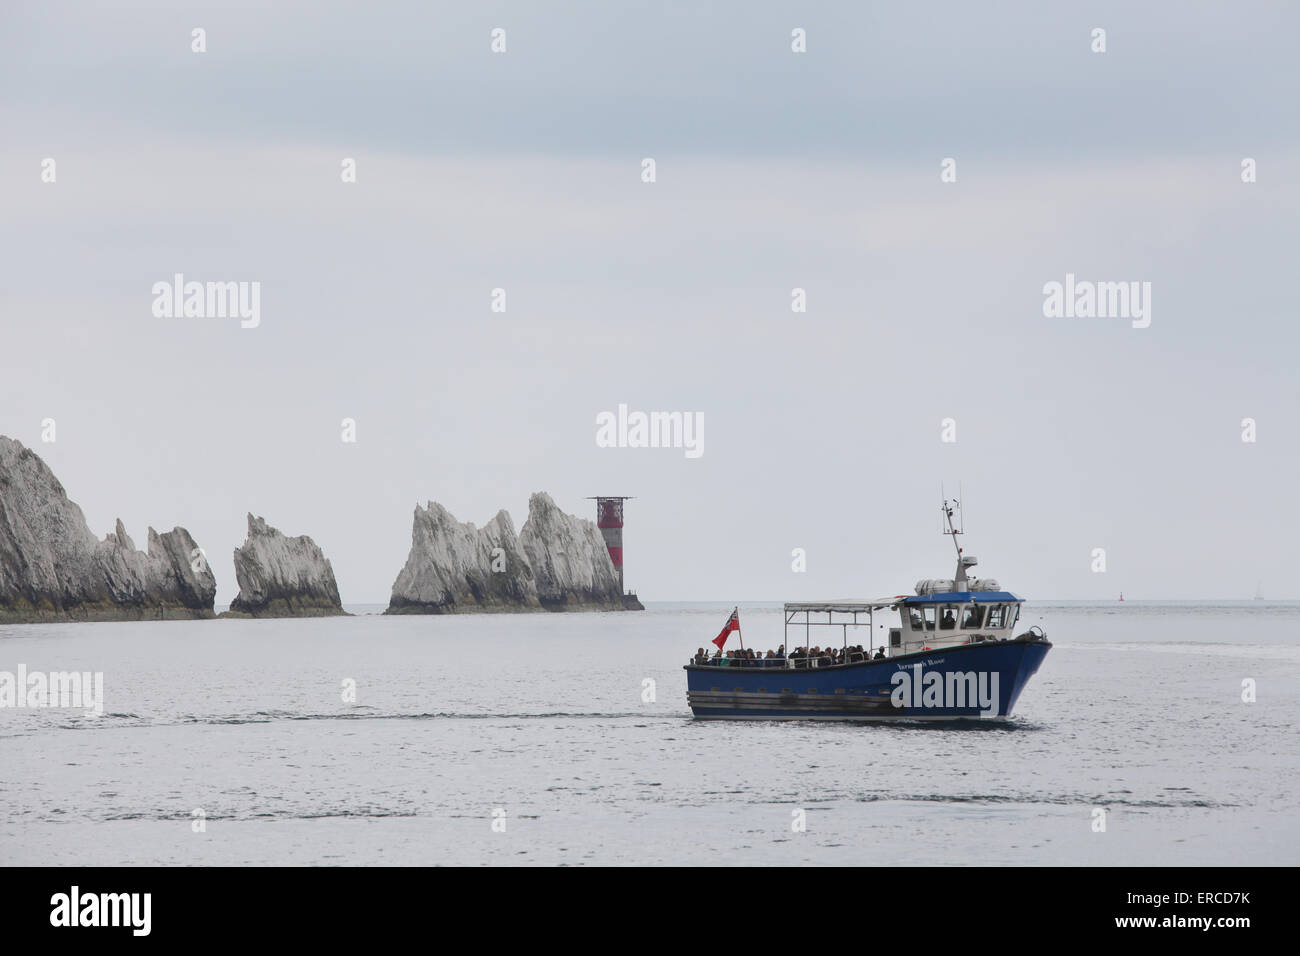 Agujas cruceros de placer, Yarmouth Rose turista viaje en barco para visitar las agujas en la Isla de Wight Foto de stock